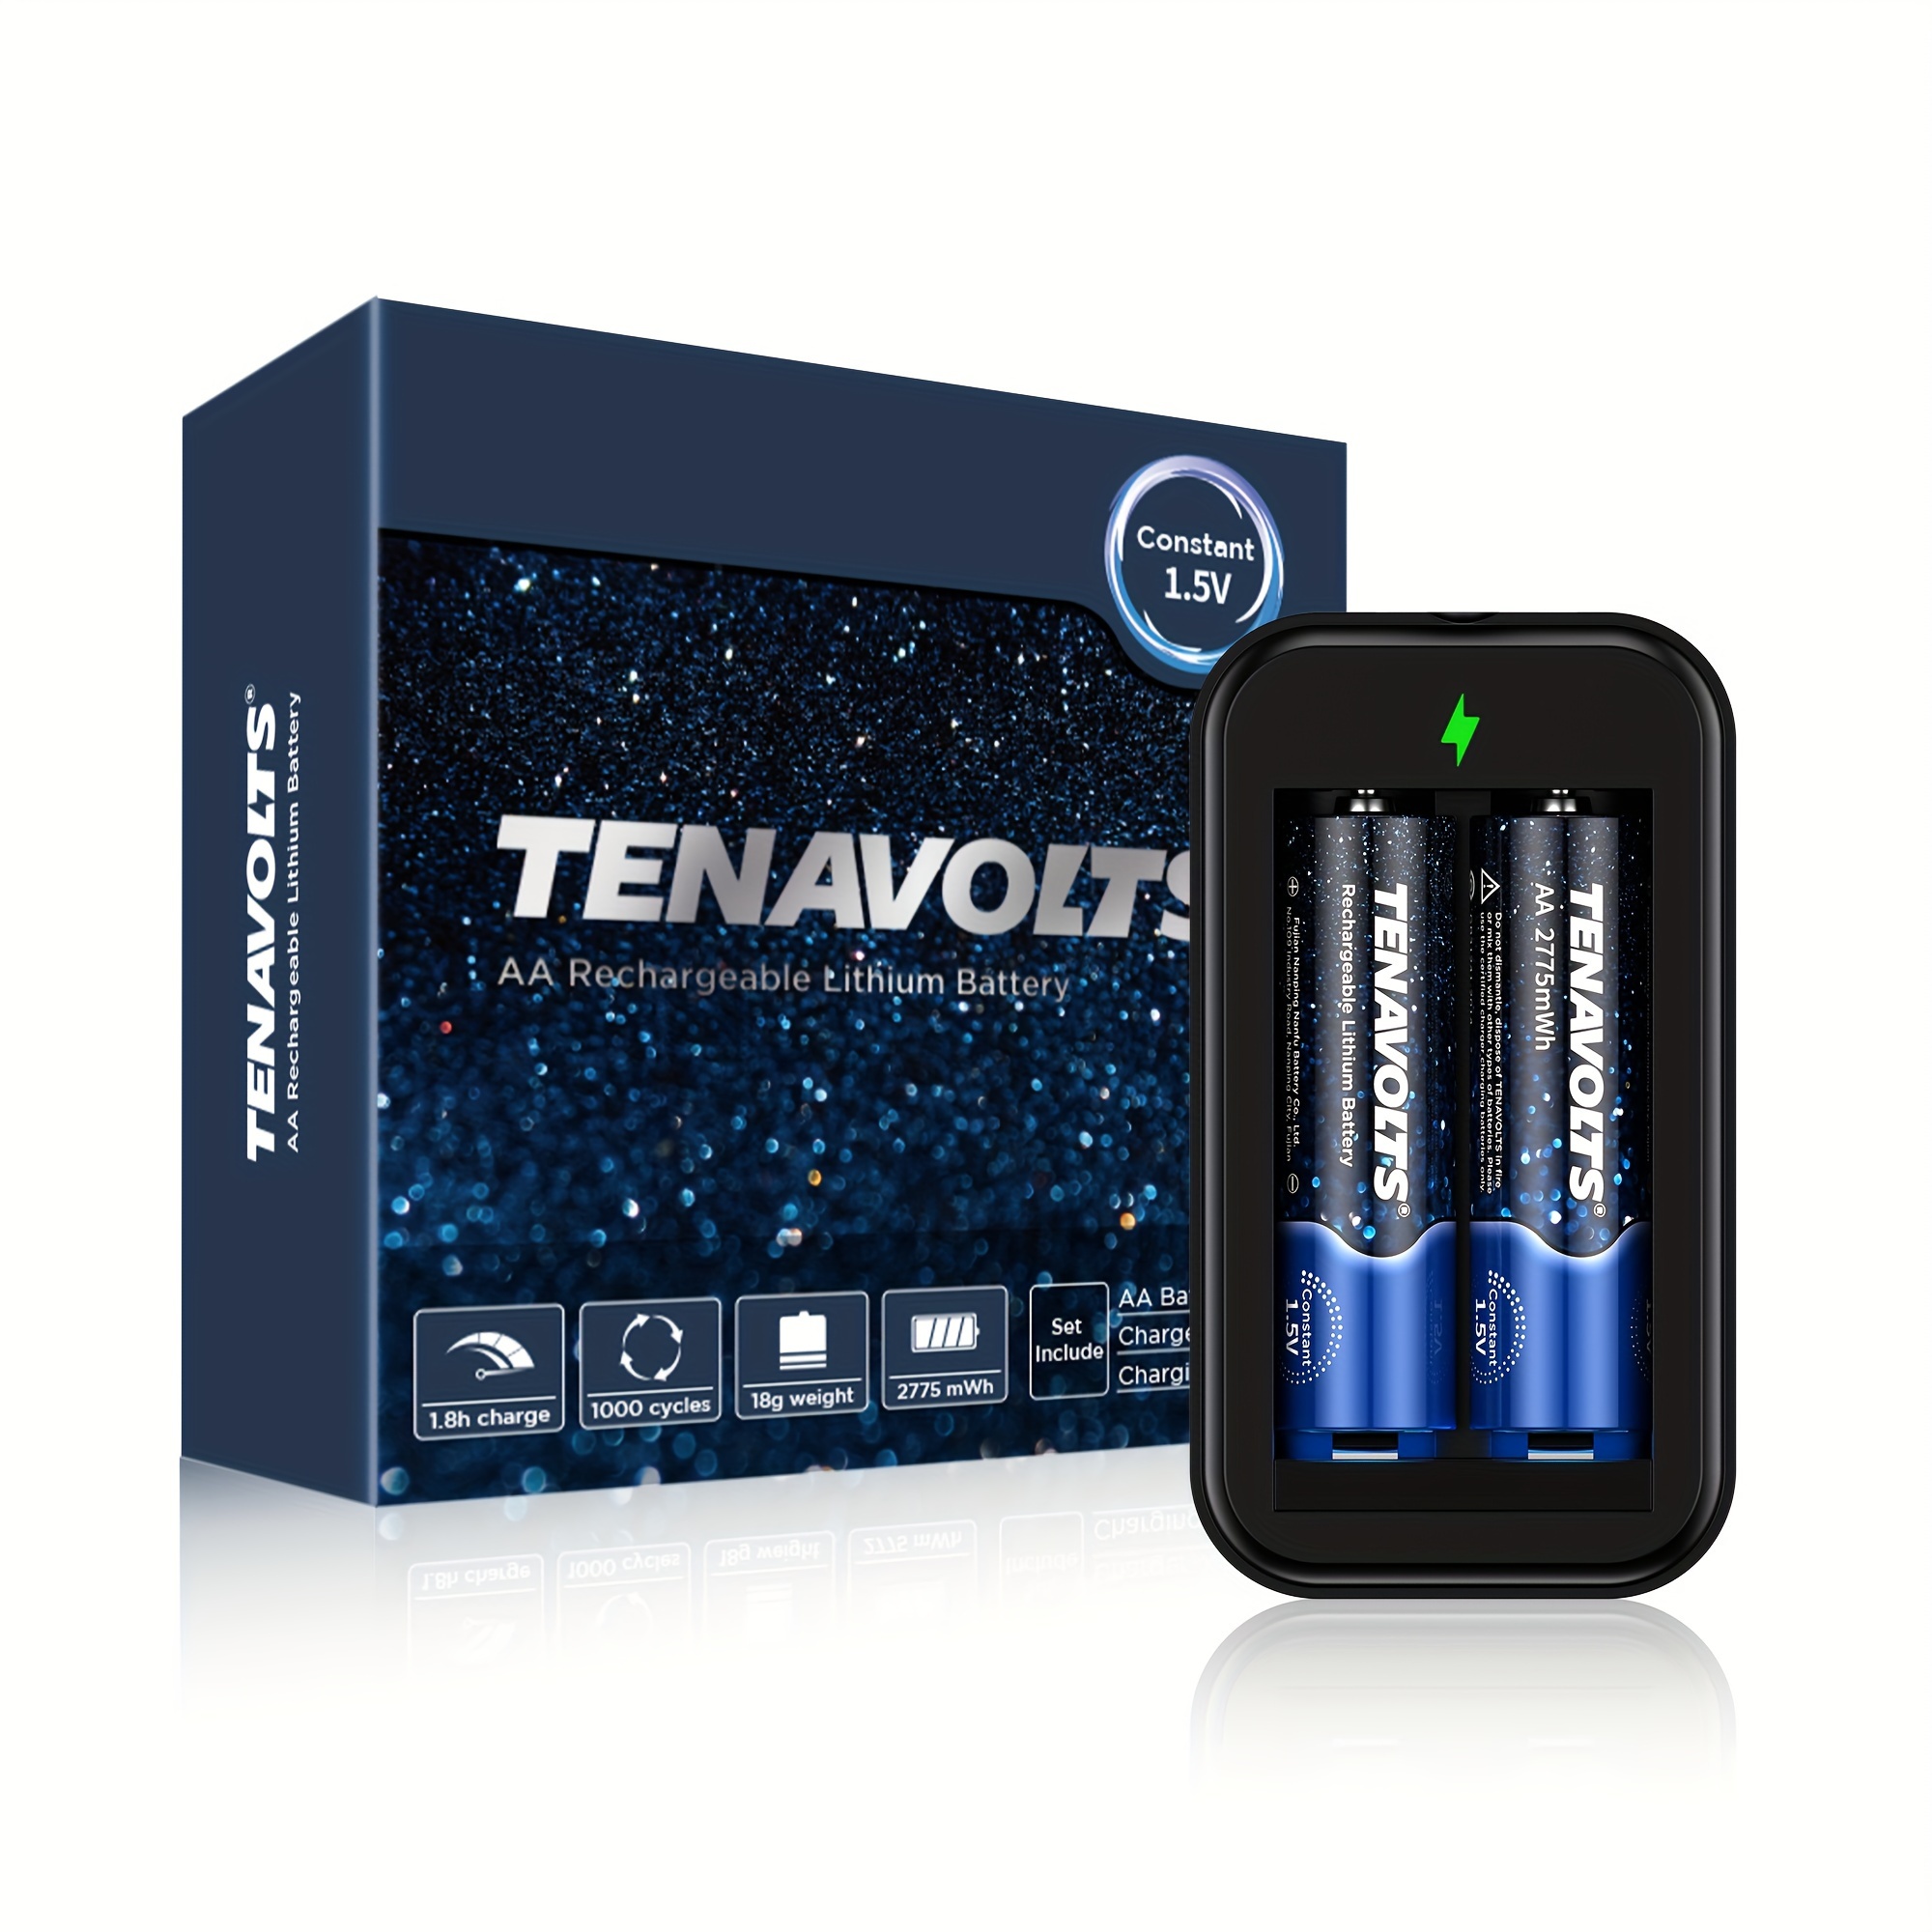 TENAVOLTS Pile rechargeable au lithium 1.5V AAA charge rapide de 1.8h  chargeur USB sortie constante à 1.5V 1110 mWh 4 comptes [31]